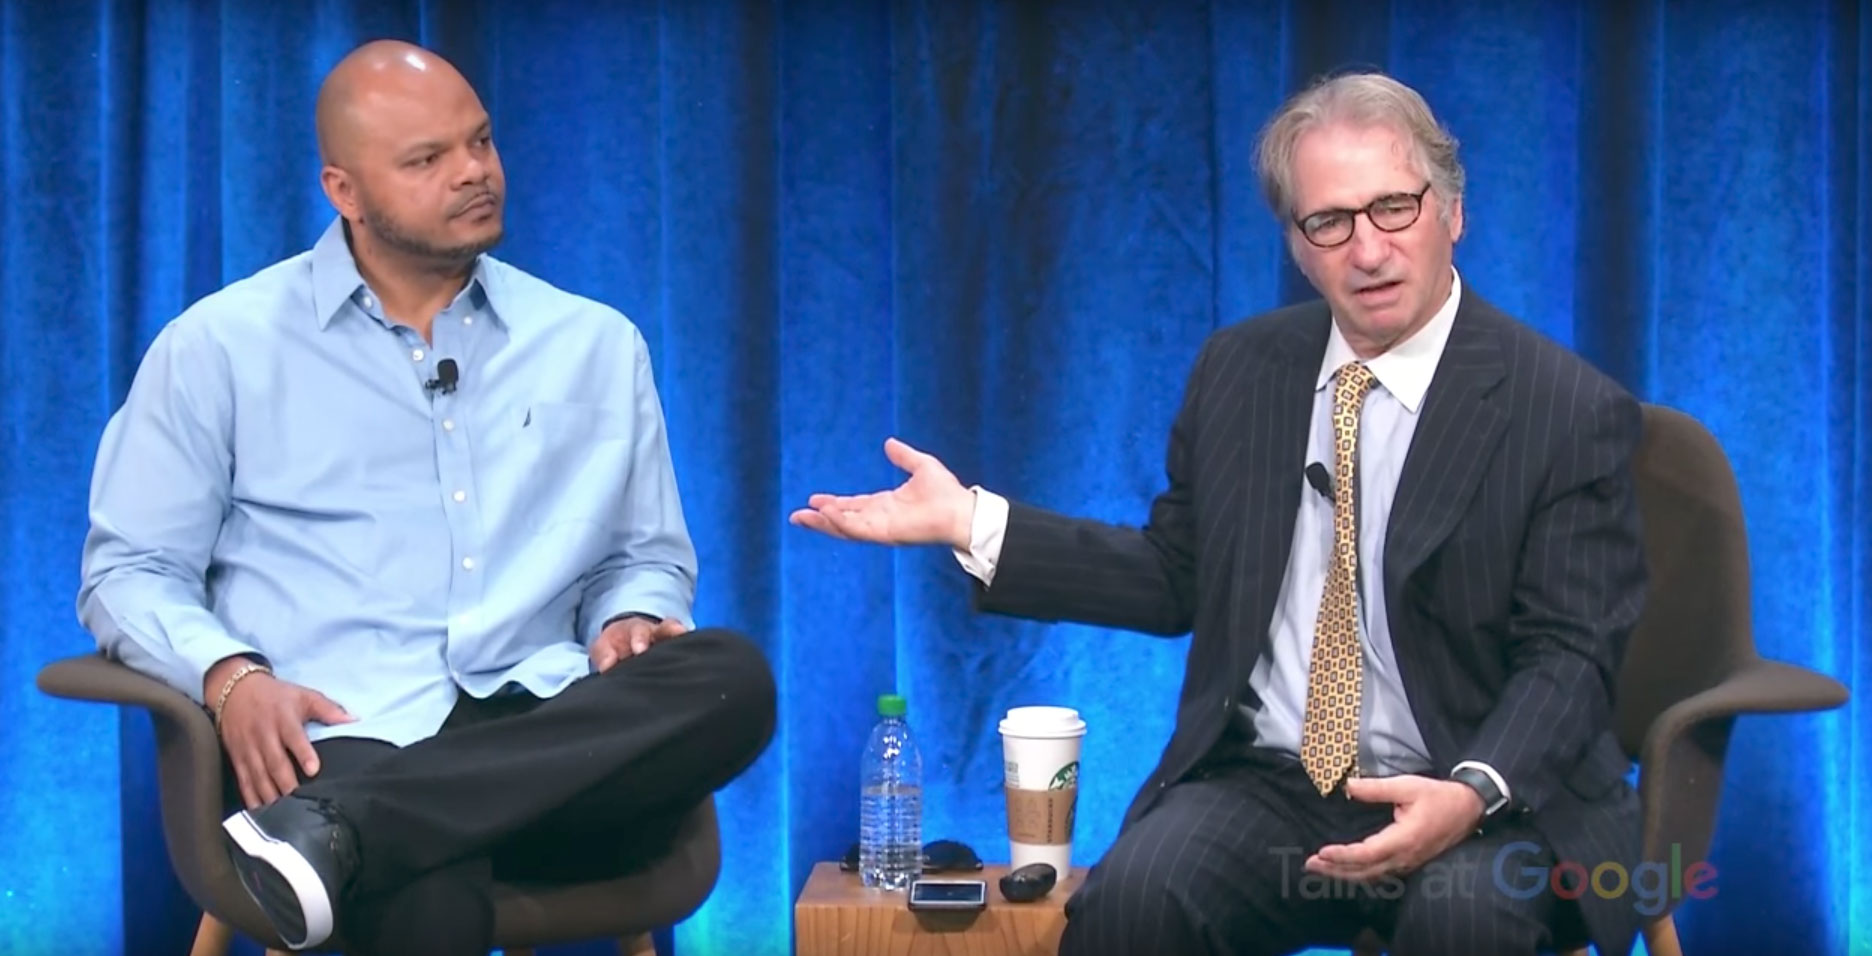 Kevin Richardson and Barry Scheck speak at Google. ©Talks at Google